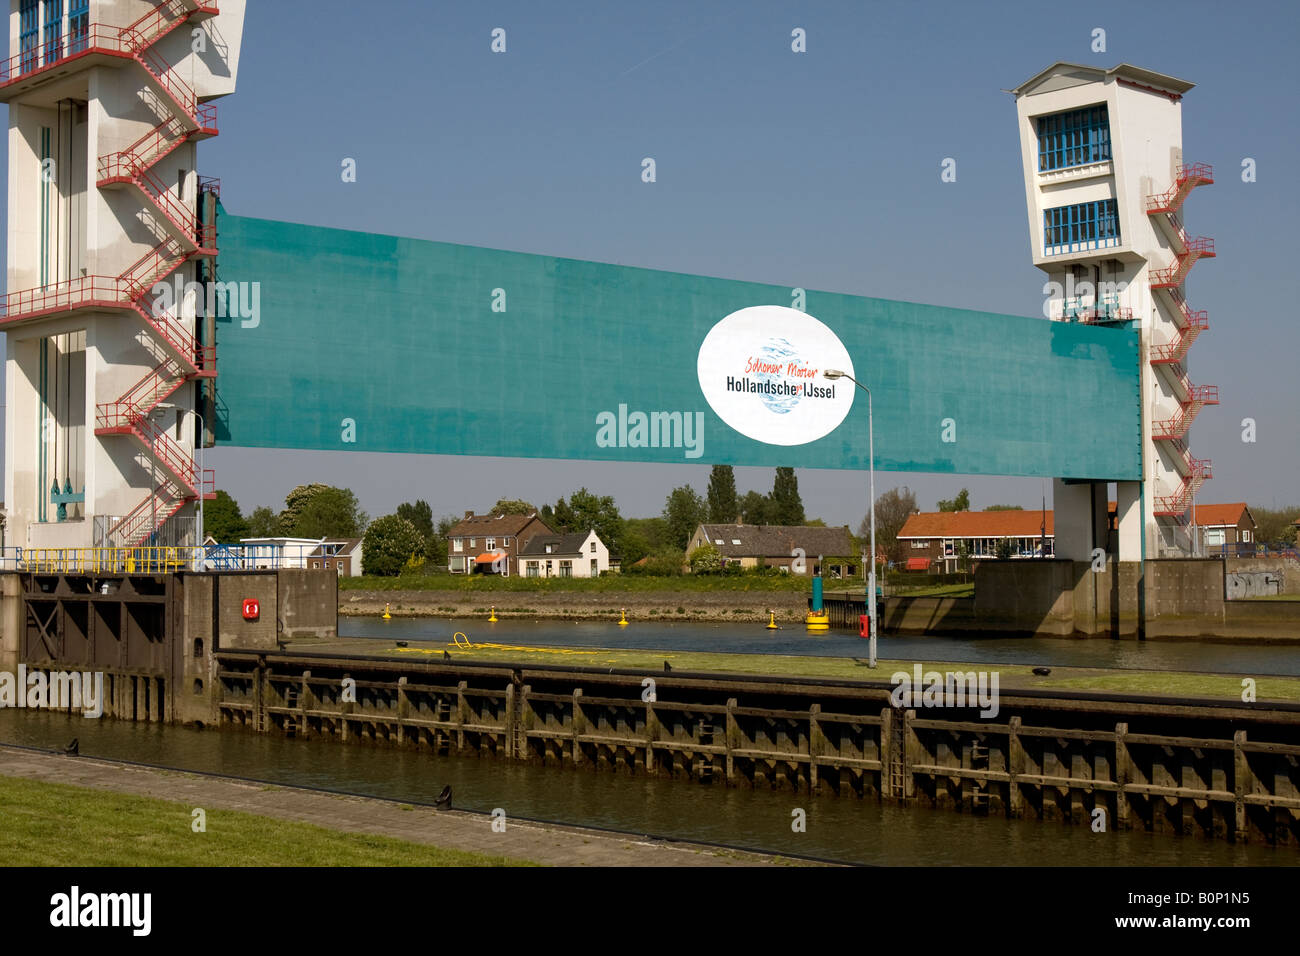 Première barrière contre les surtensions néerlandais pour protéger le pays de la mer, les surtensions, barrière Algera Krimpen aan den IJssel, Pays-Bas Banque D'Images